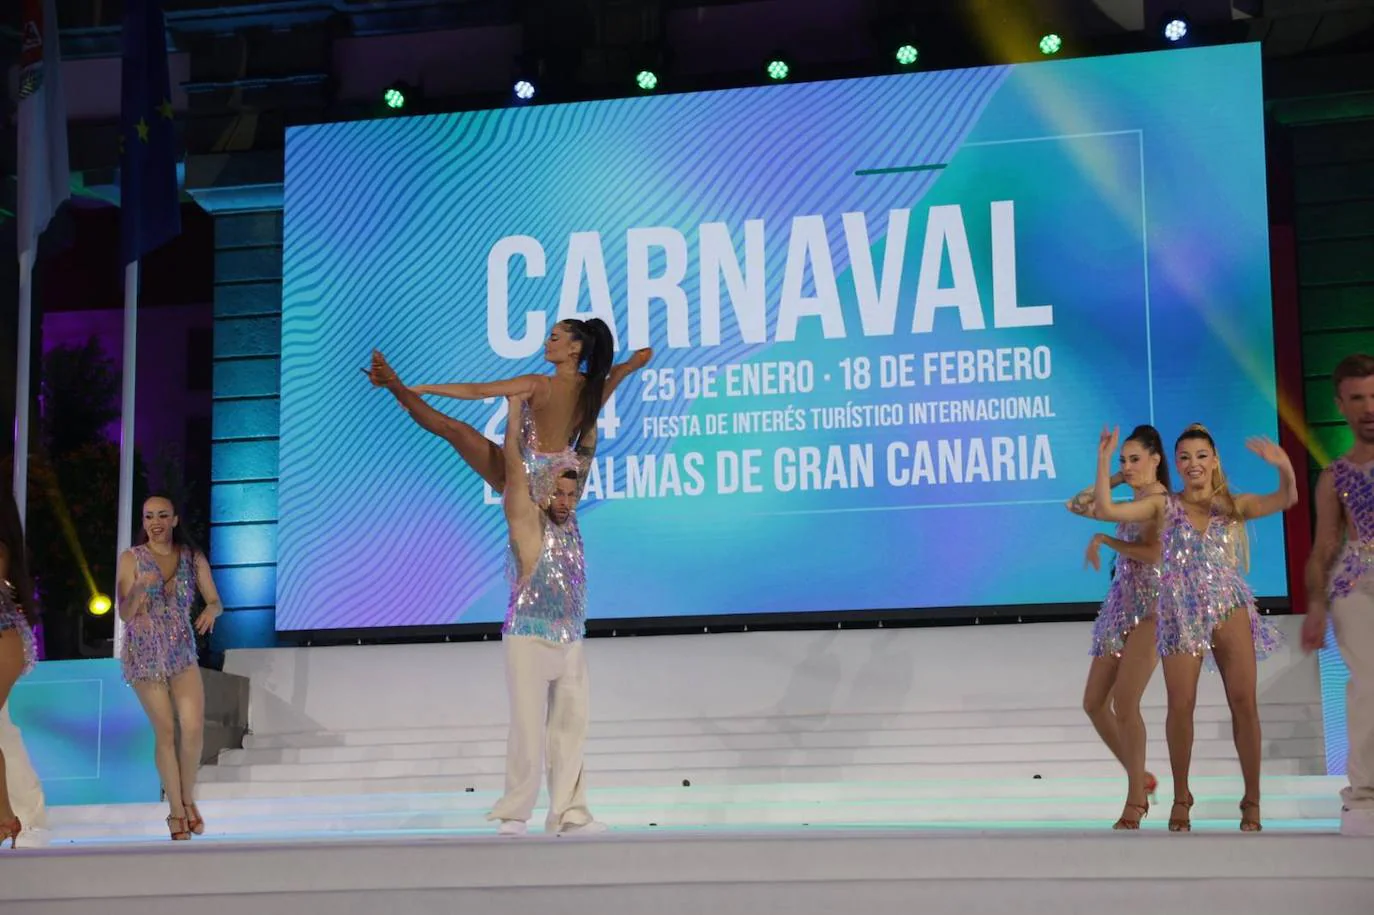 Los candidatos y candidatas a reinar en el carnaval de la capital grancanaria, en imágenes